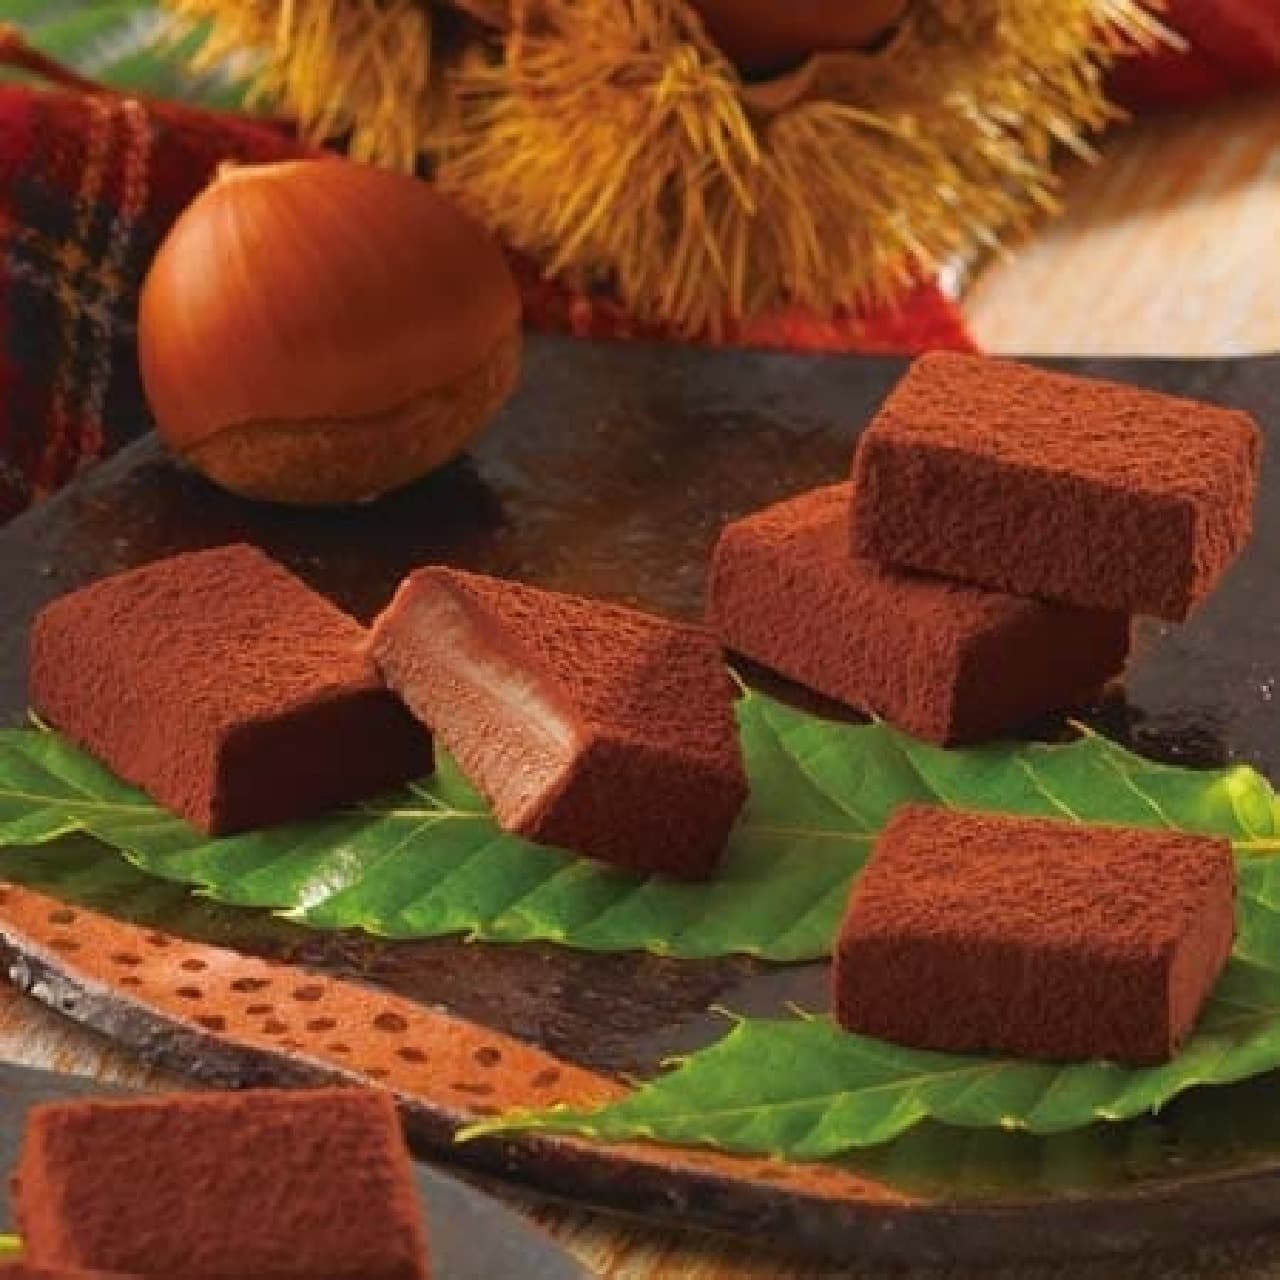 Lloyds "Raw chocolate [chestnut]"